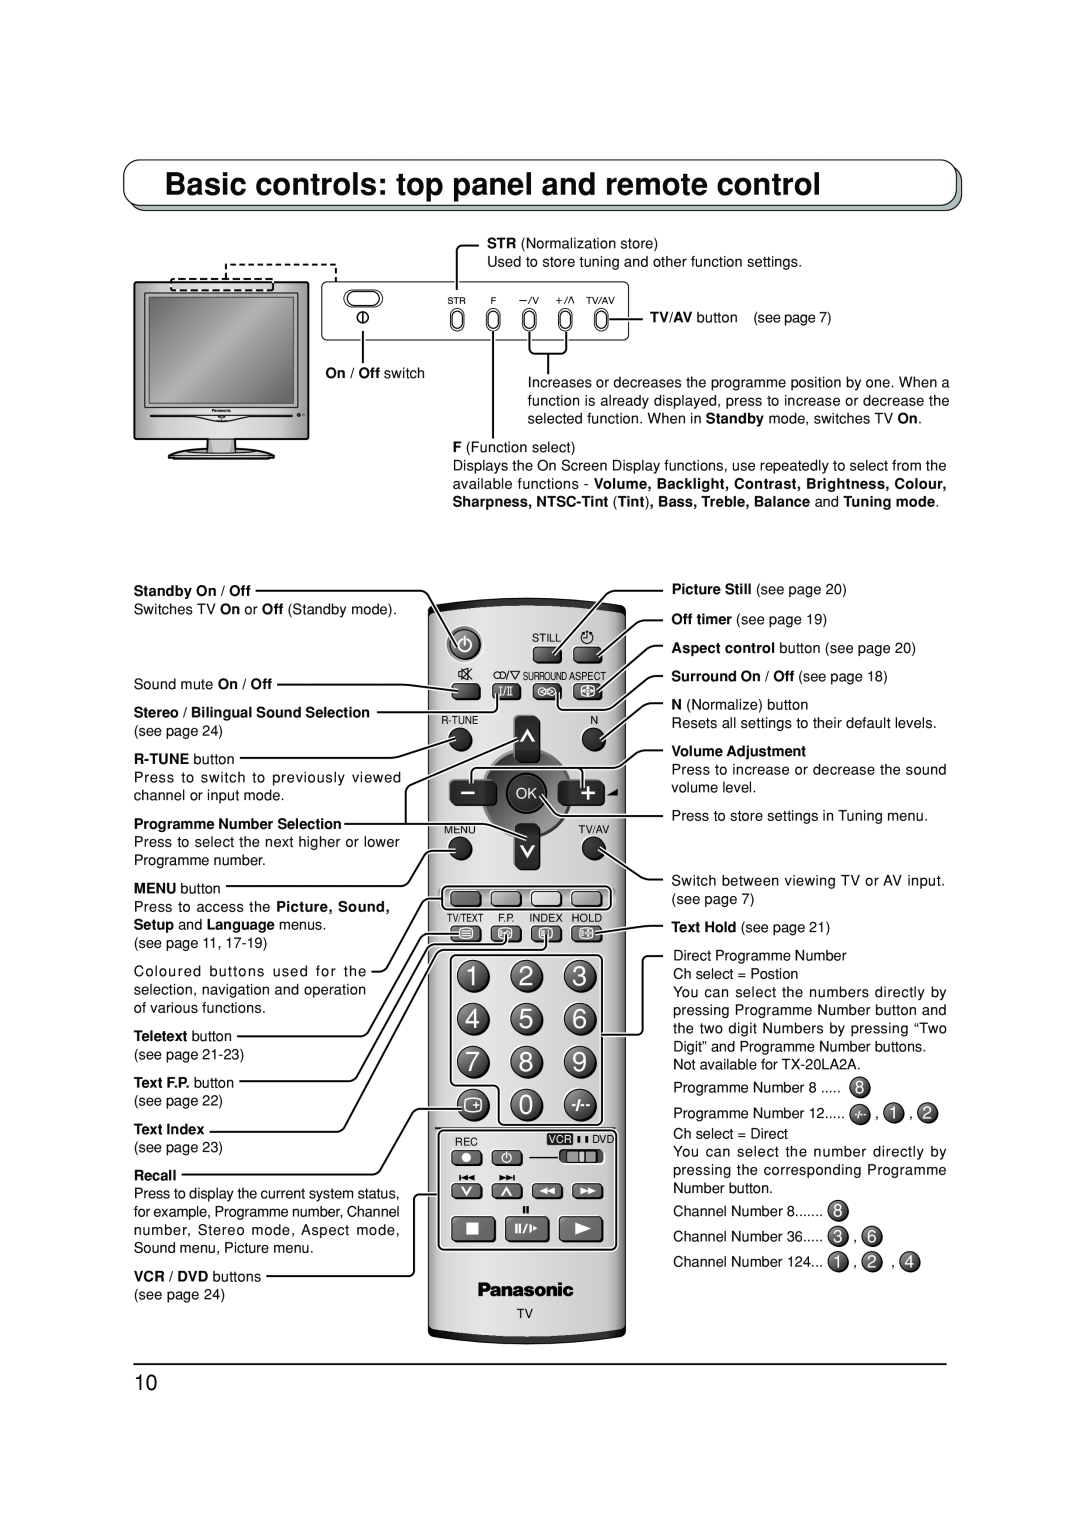 Panasonic TX-20LA2X, TX-20LA2A, TX-20LA2M manual Basic controls top panel and remote control, 1 2 4 5 7 8 